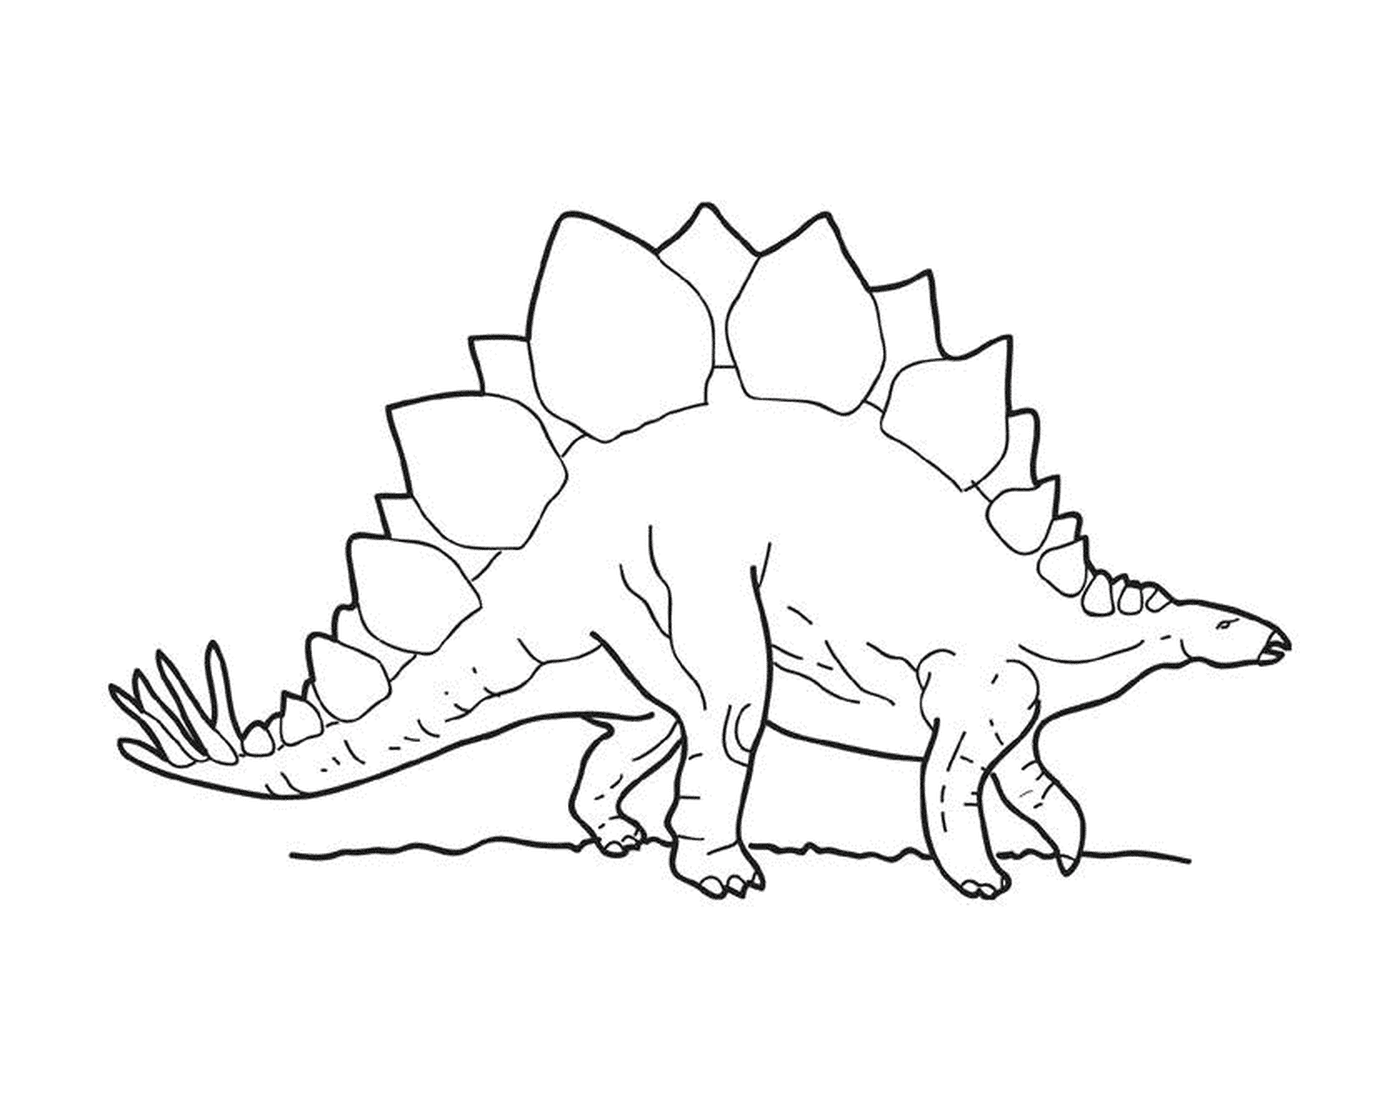  Un estegosaurio de pie 